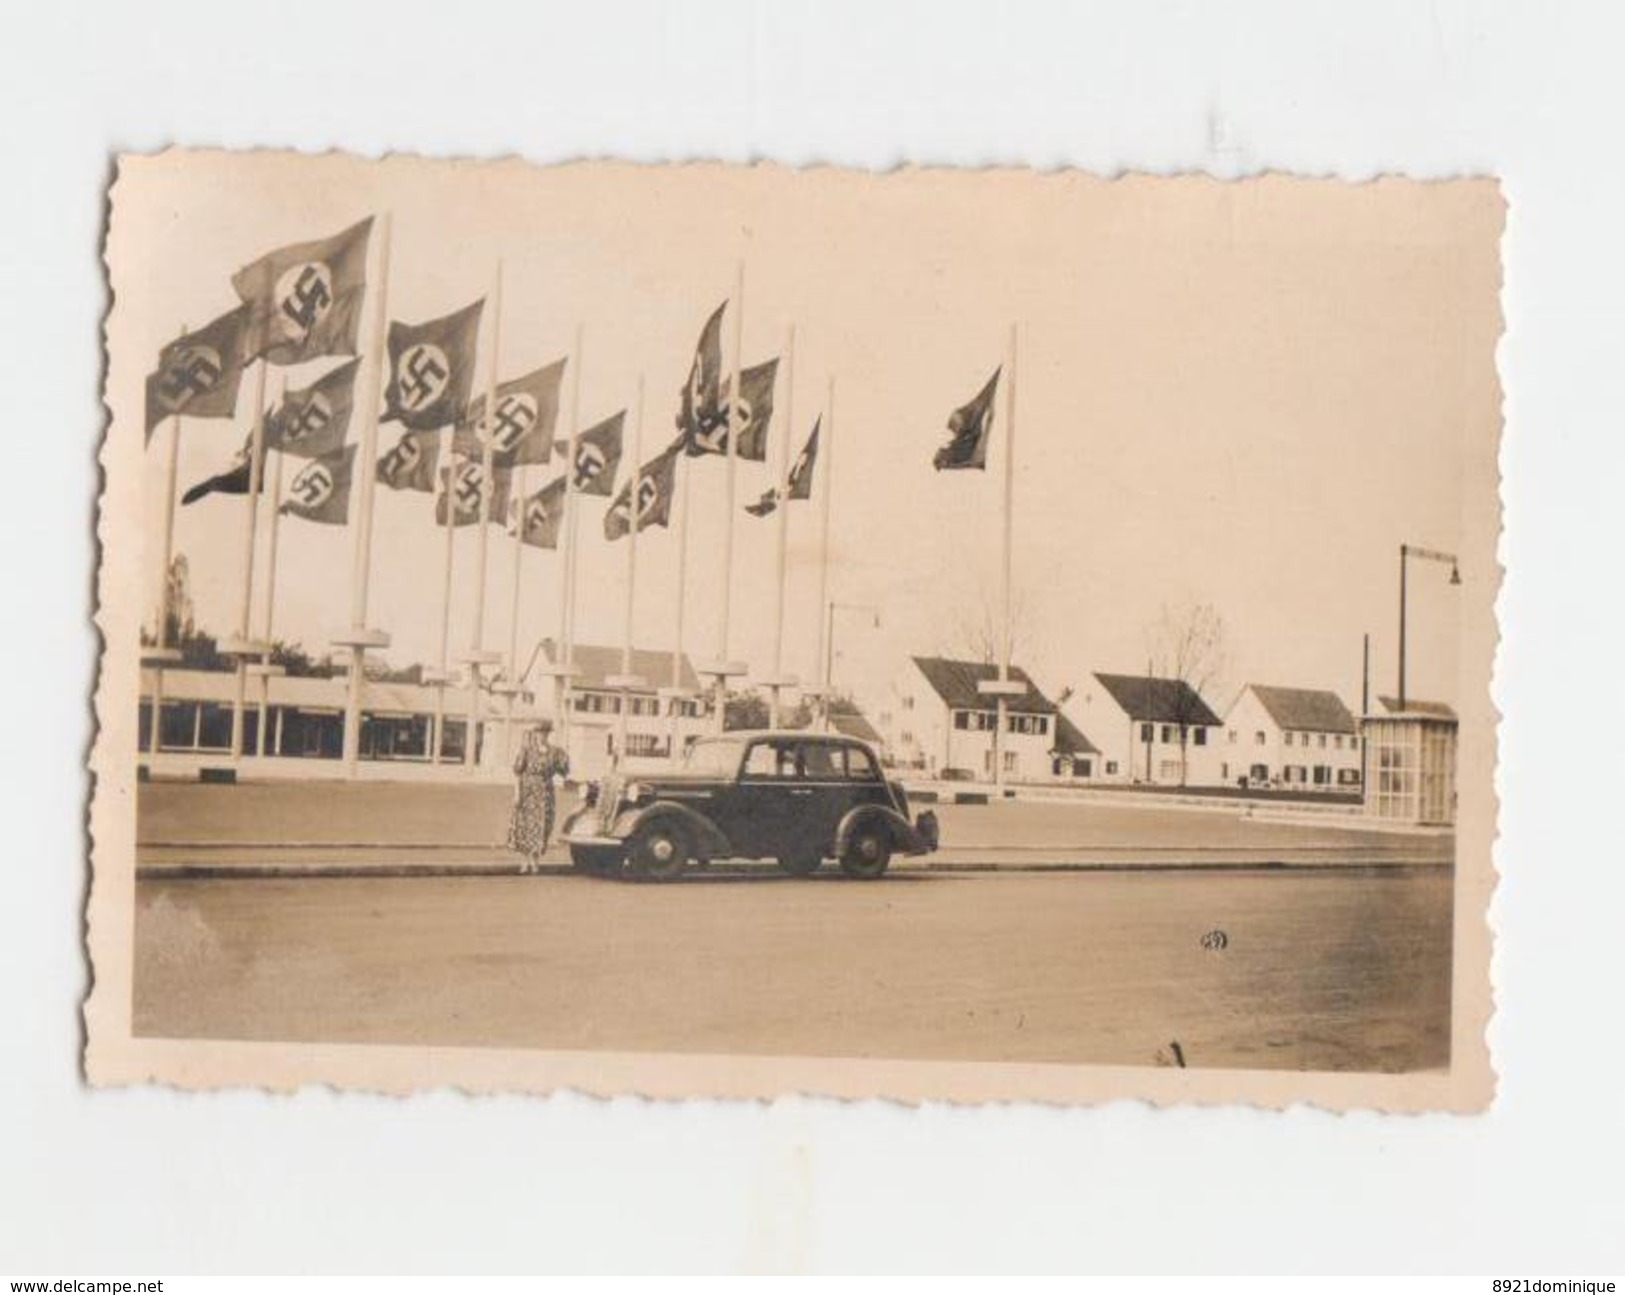 Düsseldorf - Exposition During World War 2 - Nazi Flags - War, Military